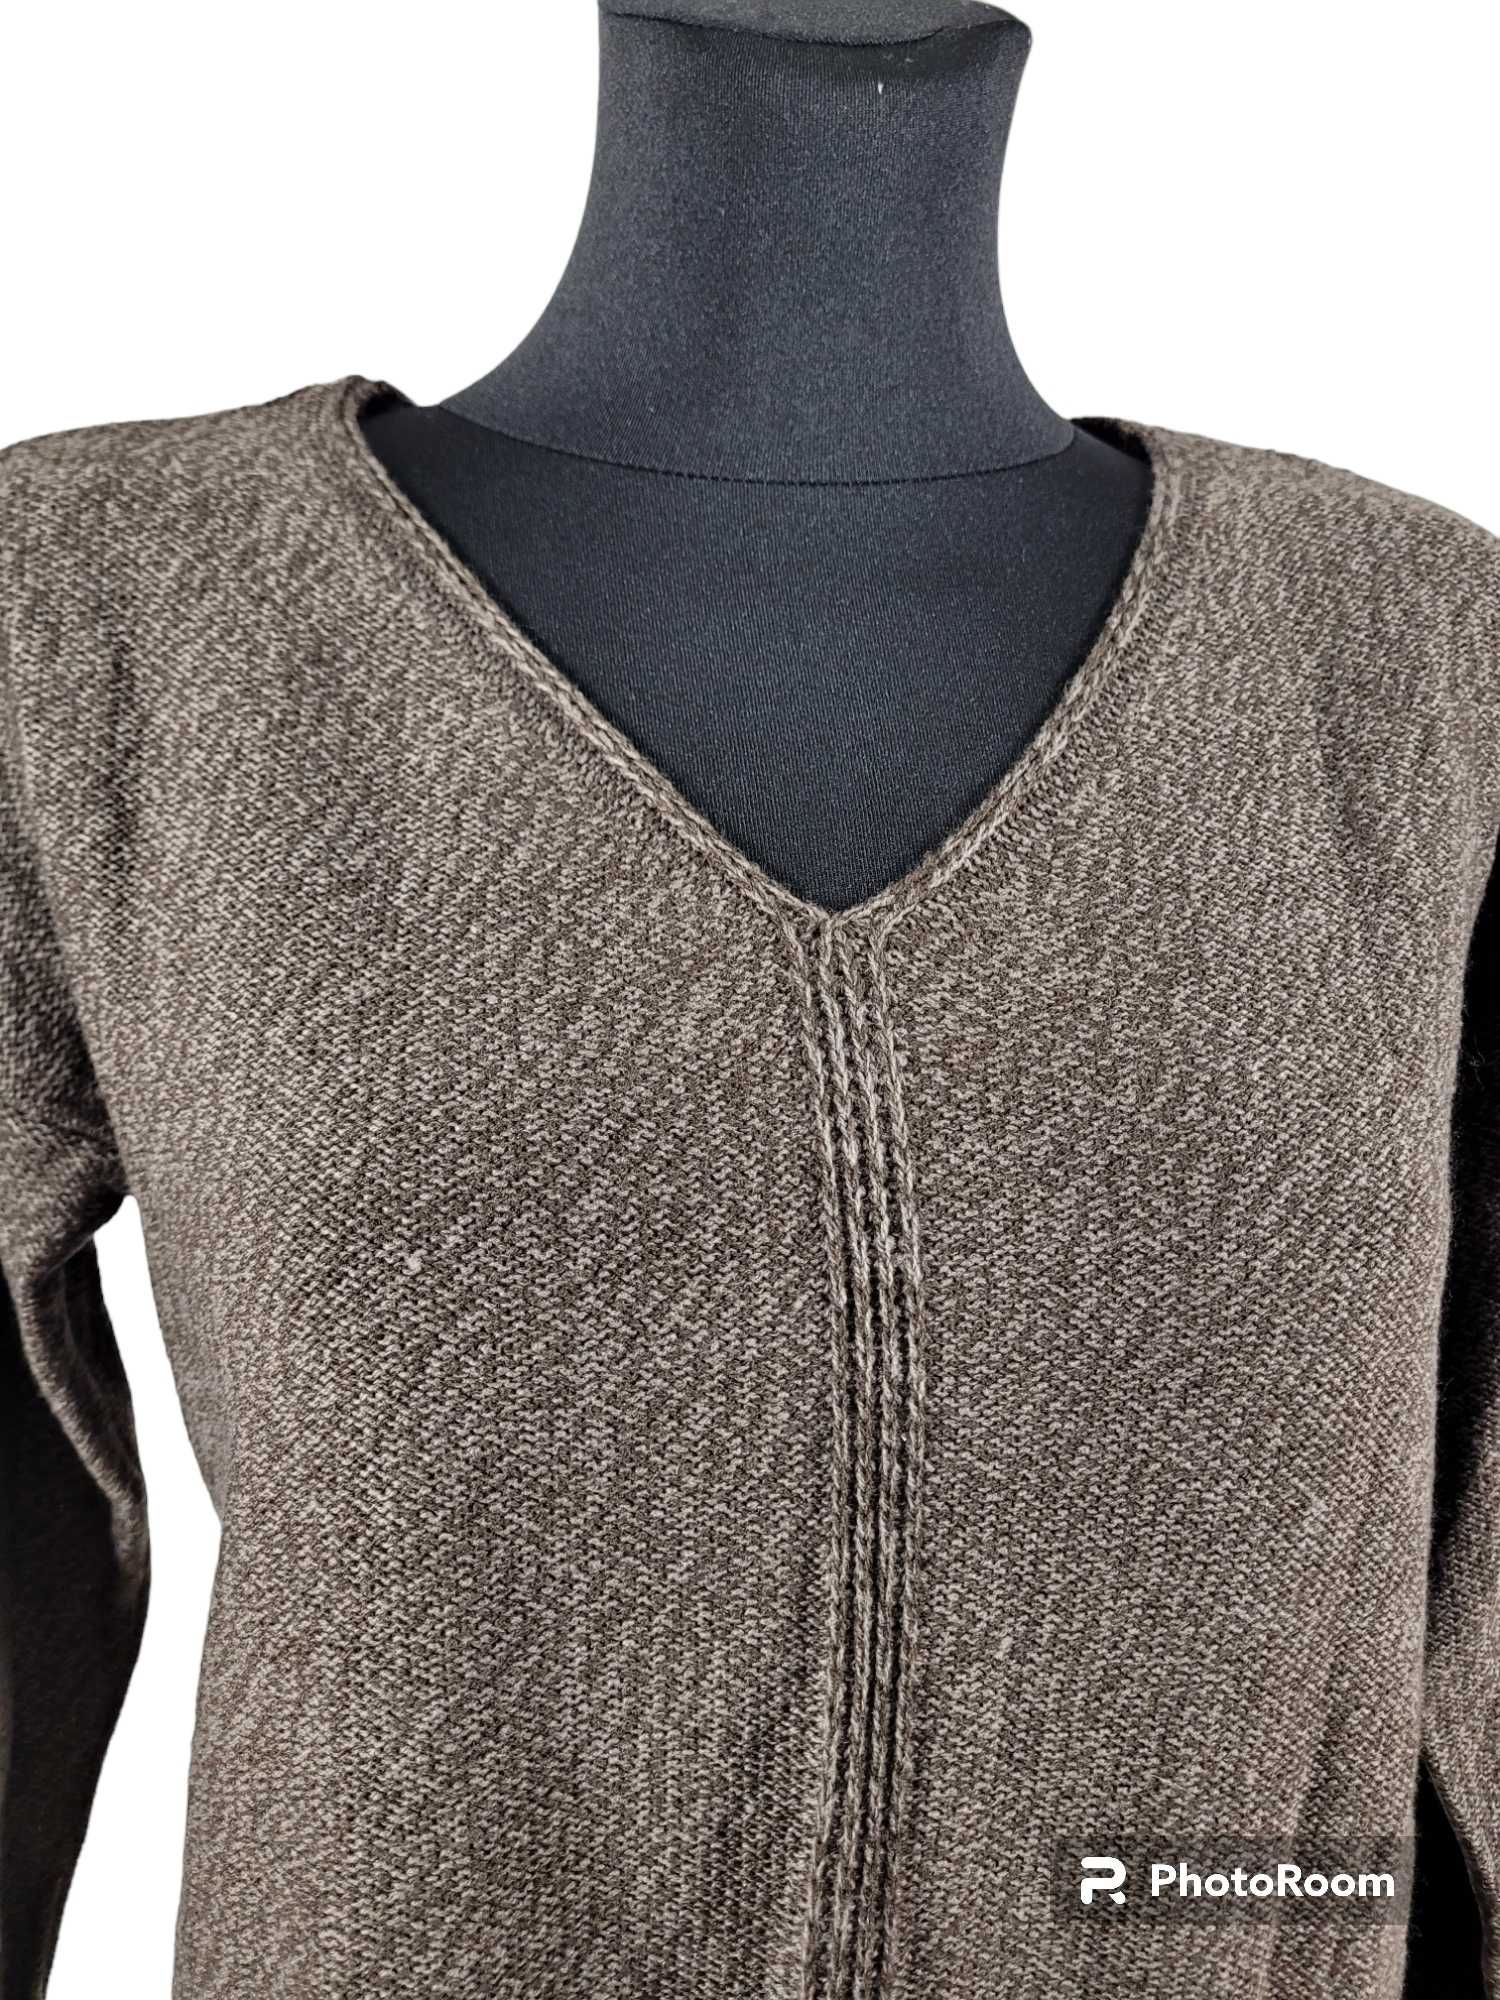 Nowy sweter BonPrix 36,S / 38,M melanż brązowy